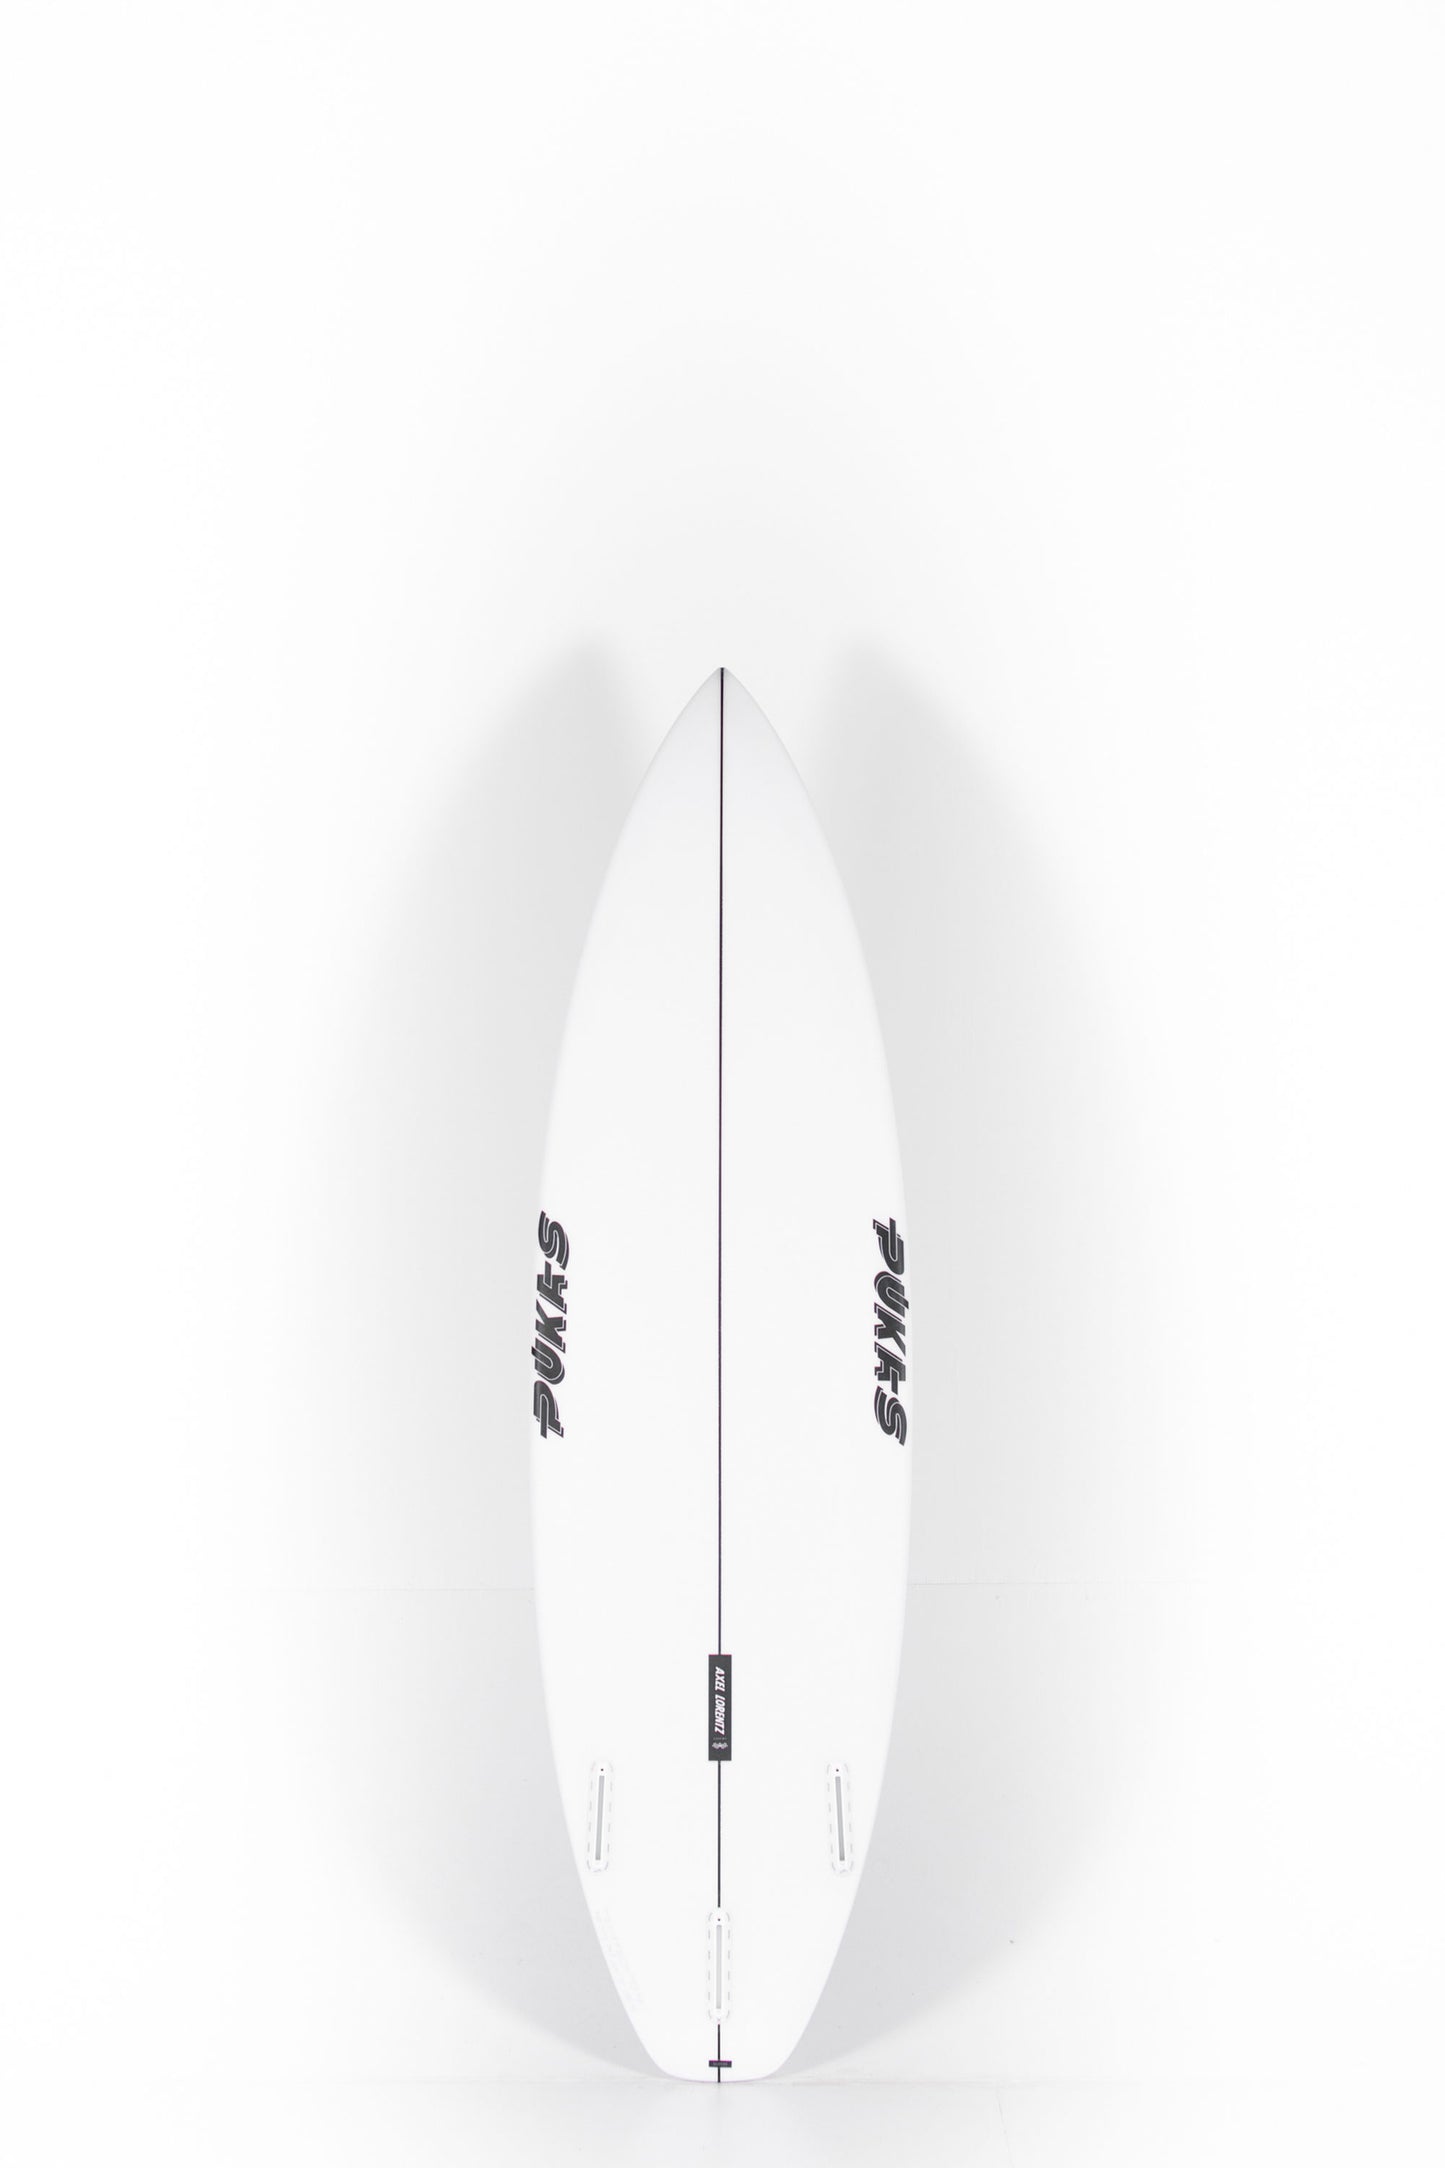 
                  
                    Pukas Surfboard - DARKER by Axel Lorentz - 6'2" x 19,75 x 2,44 x 31,6L. - AX07160
                  
                